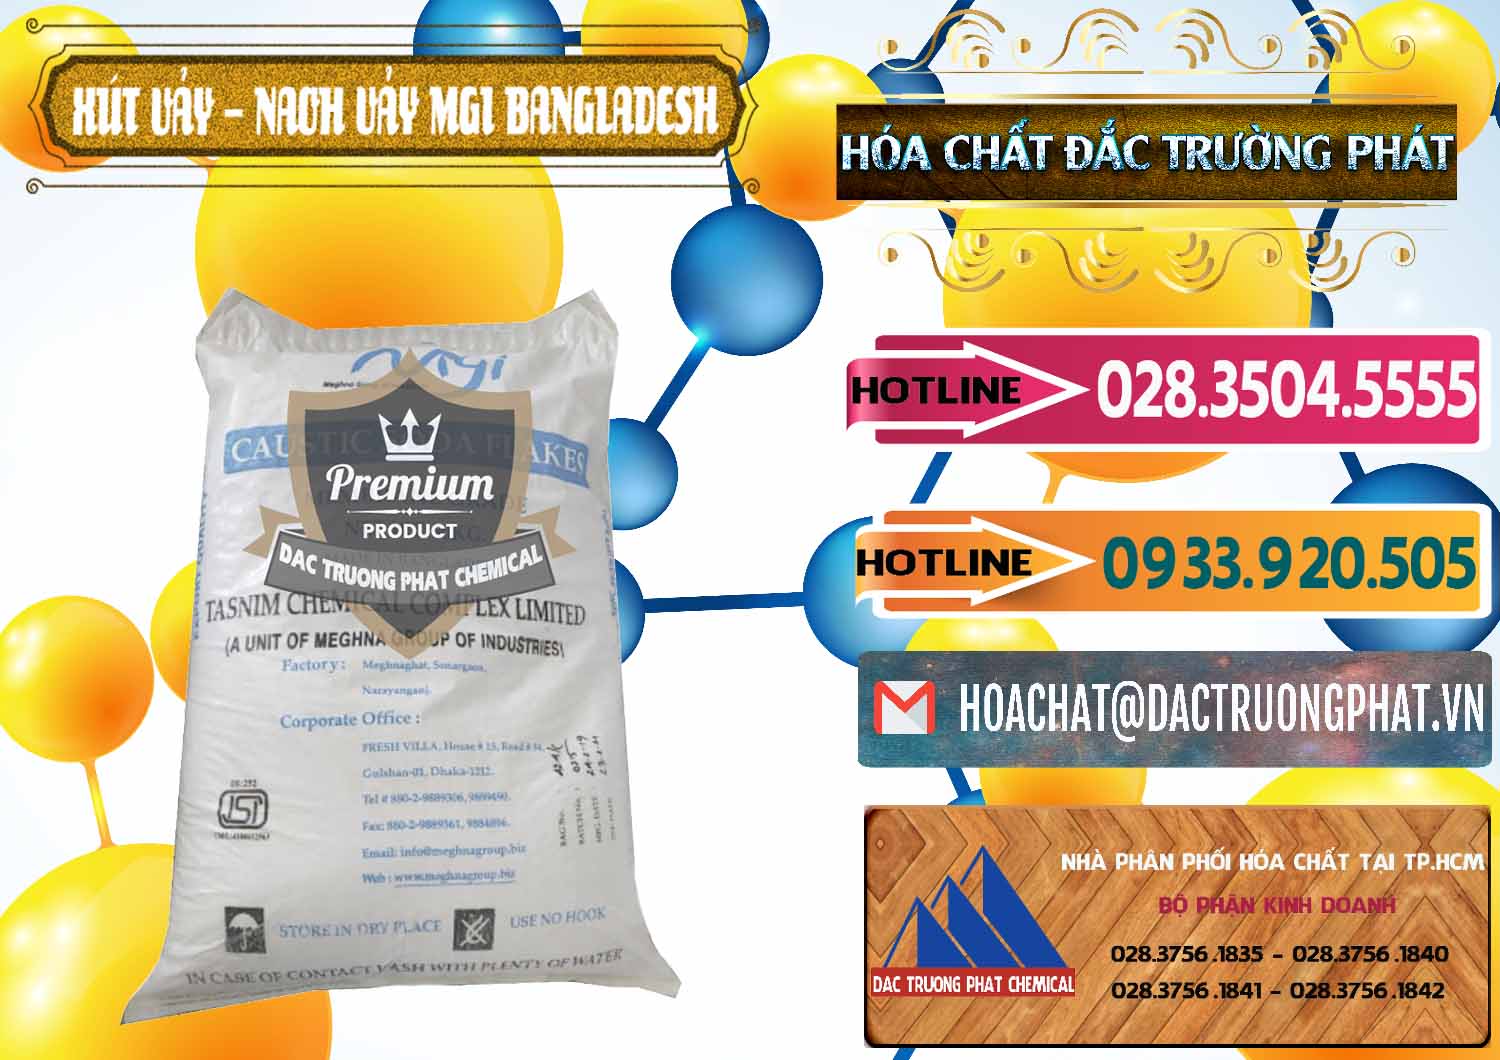 Cty bán và cung cấp Xút Vảy - NaOH Vảy 99% MGI Bangladesh - 0274 - Công ty chuyên kinh doanh và cung cấp hóa chất tại TP.HCM - dactruongphat.vn